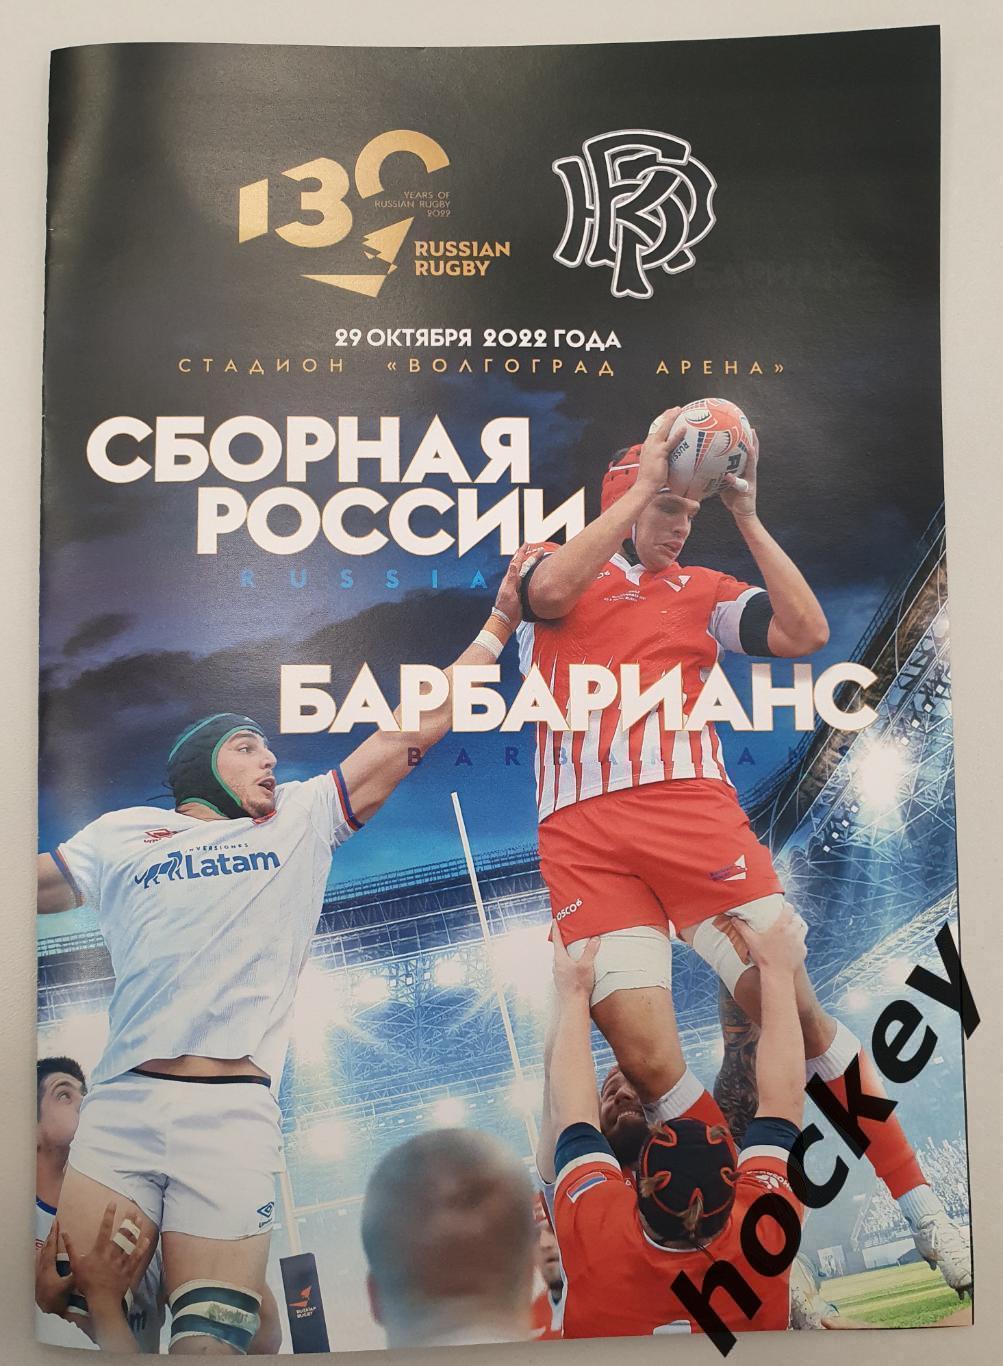 Сборная России - Барбарианс 29.10.2022 (матч в Волгограде)